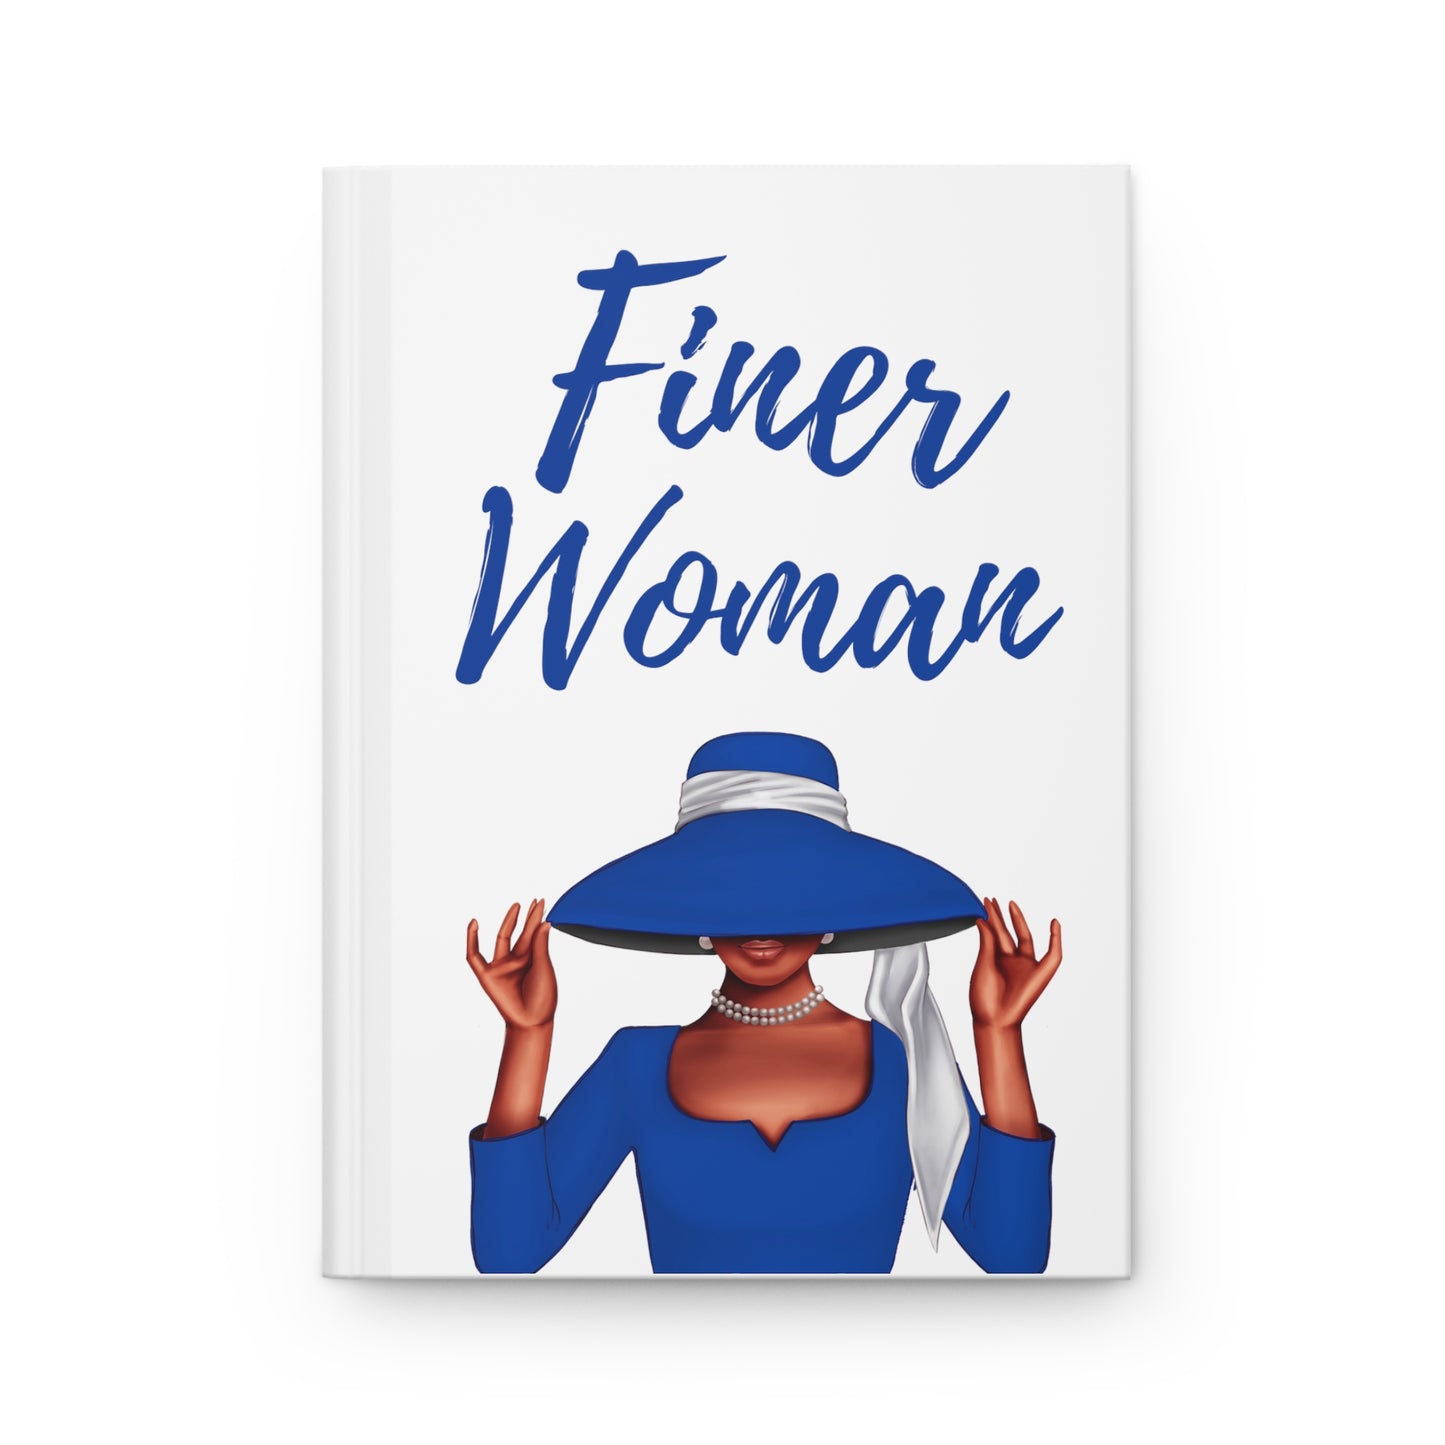 Finer Woman Journal Matte